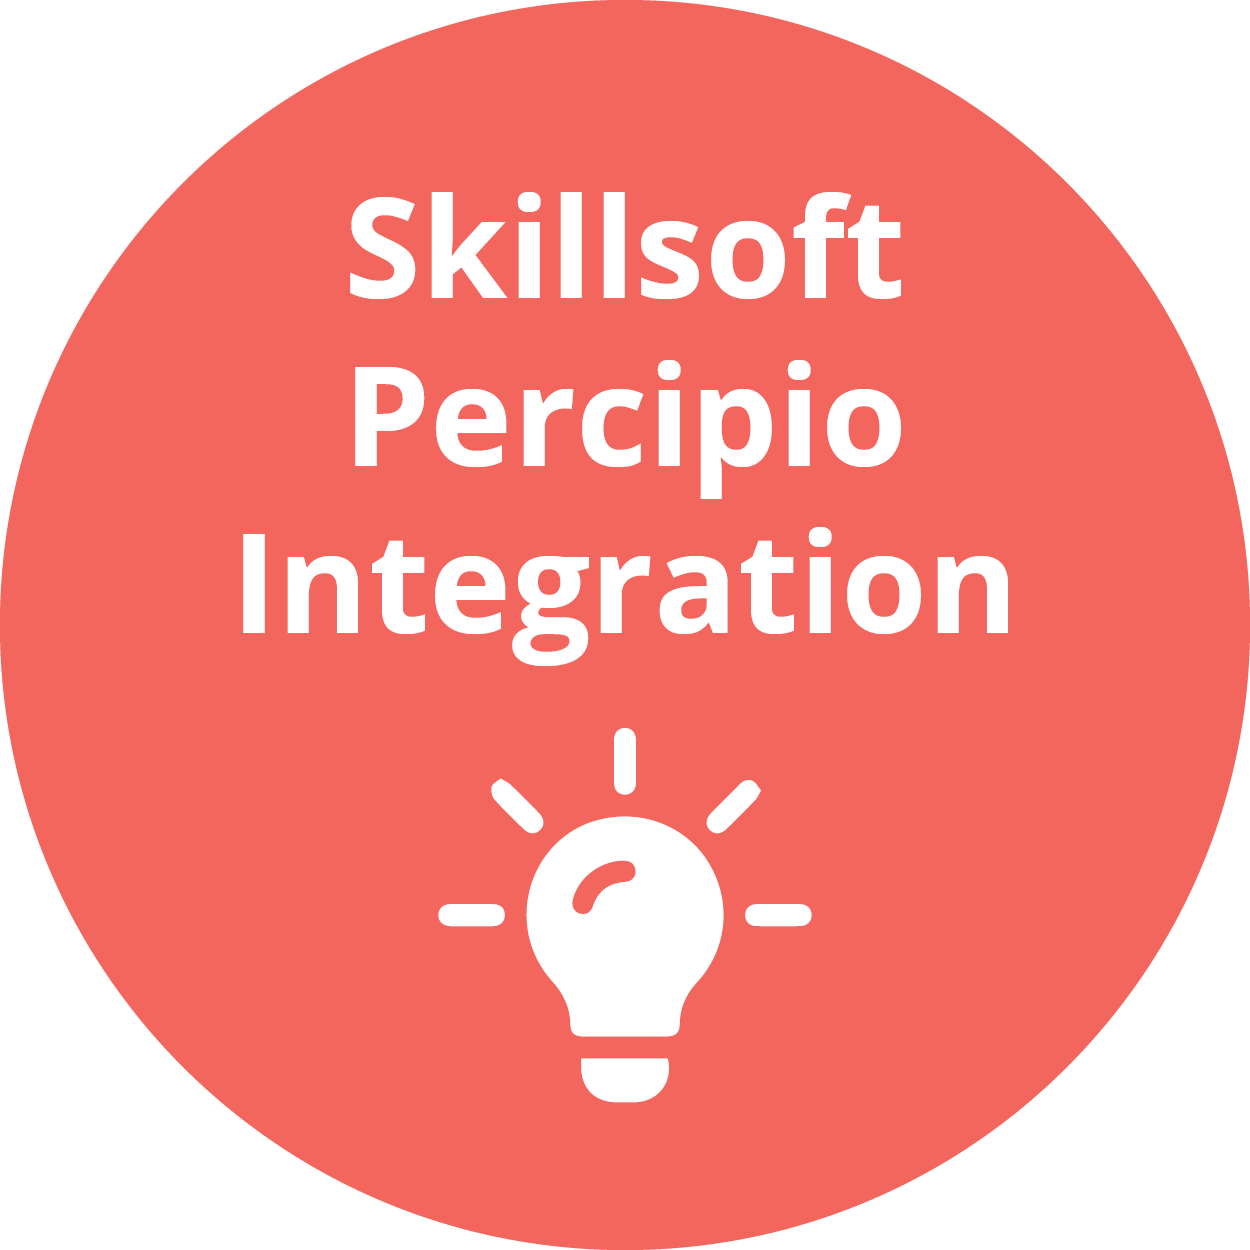 Skillsoft Percipio Integration